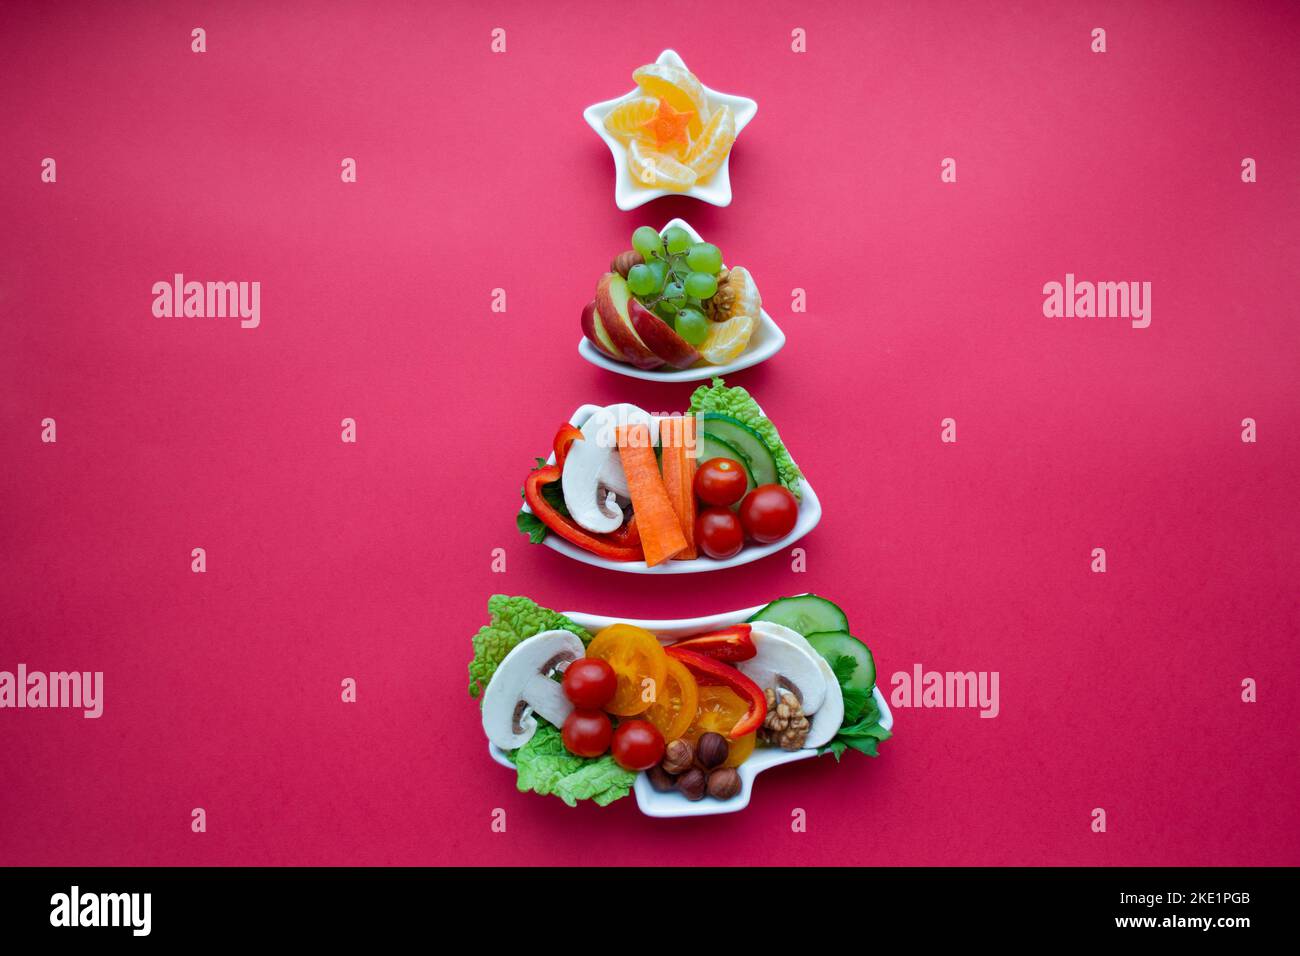 Piatto in forma di albero di Natale con verdure, frutta, funghi e bacche. Sfondo rosso. Il concetto di prelibatezze vegetariane per le vacanze Foto Stock